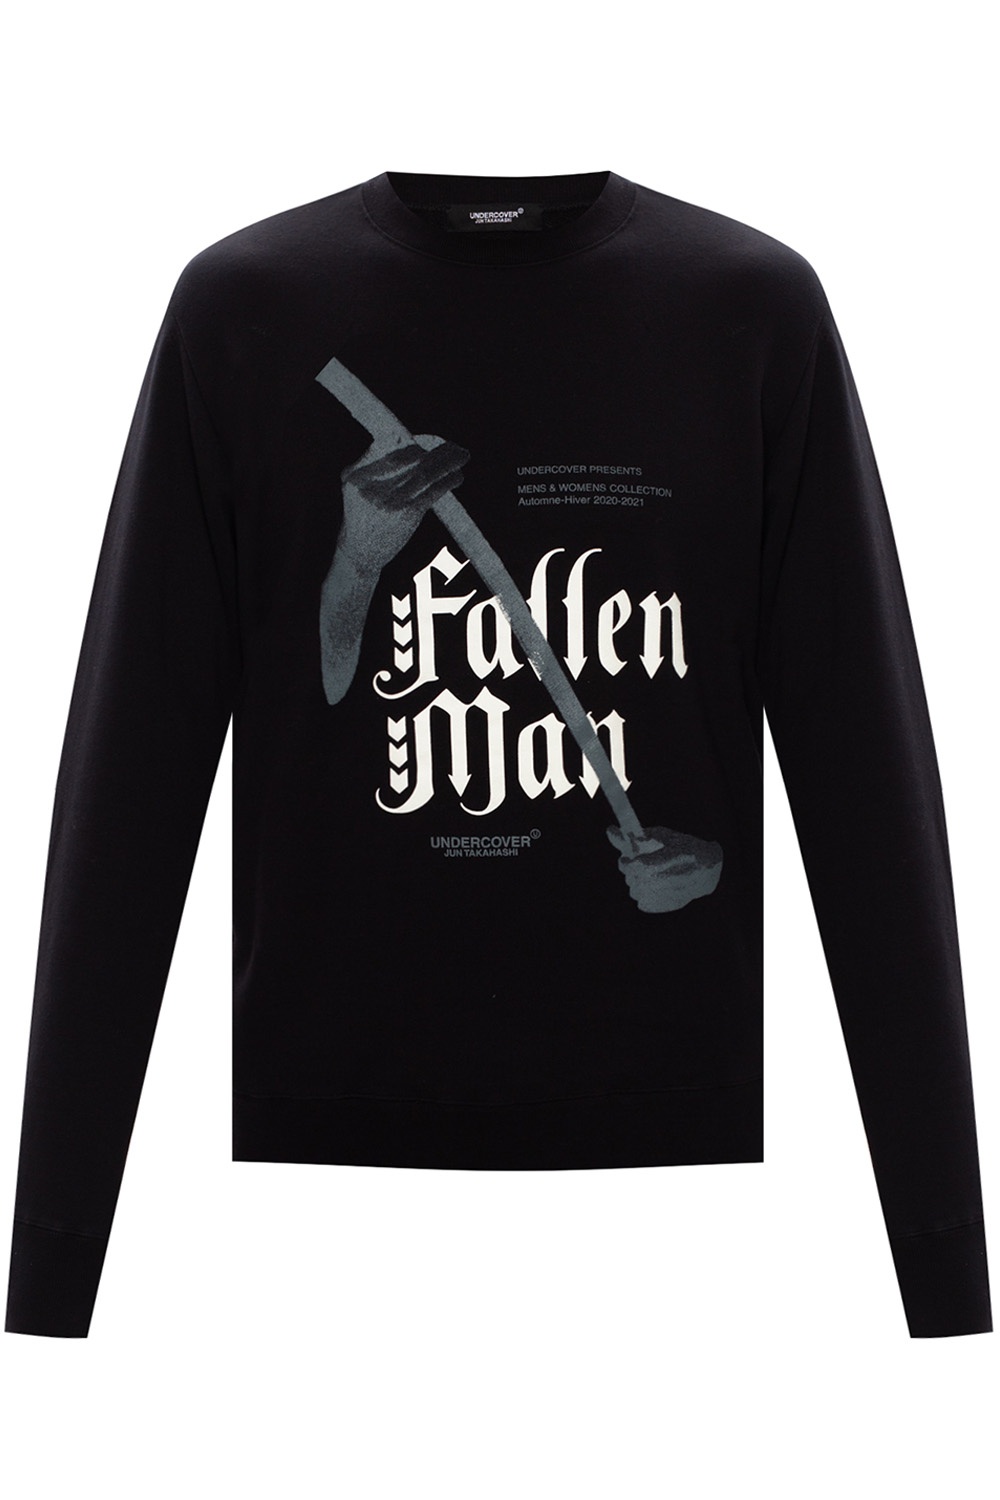 Undercover Printed sweatshirt | Men's Clothing | IetpShops